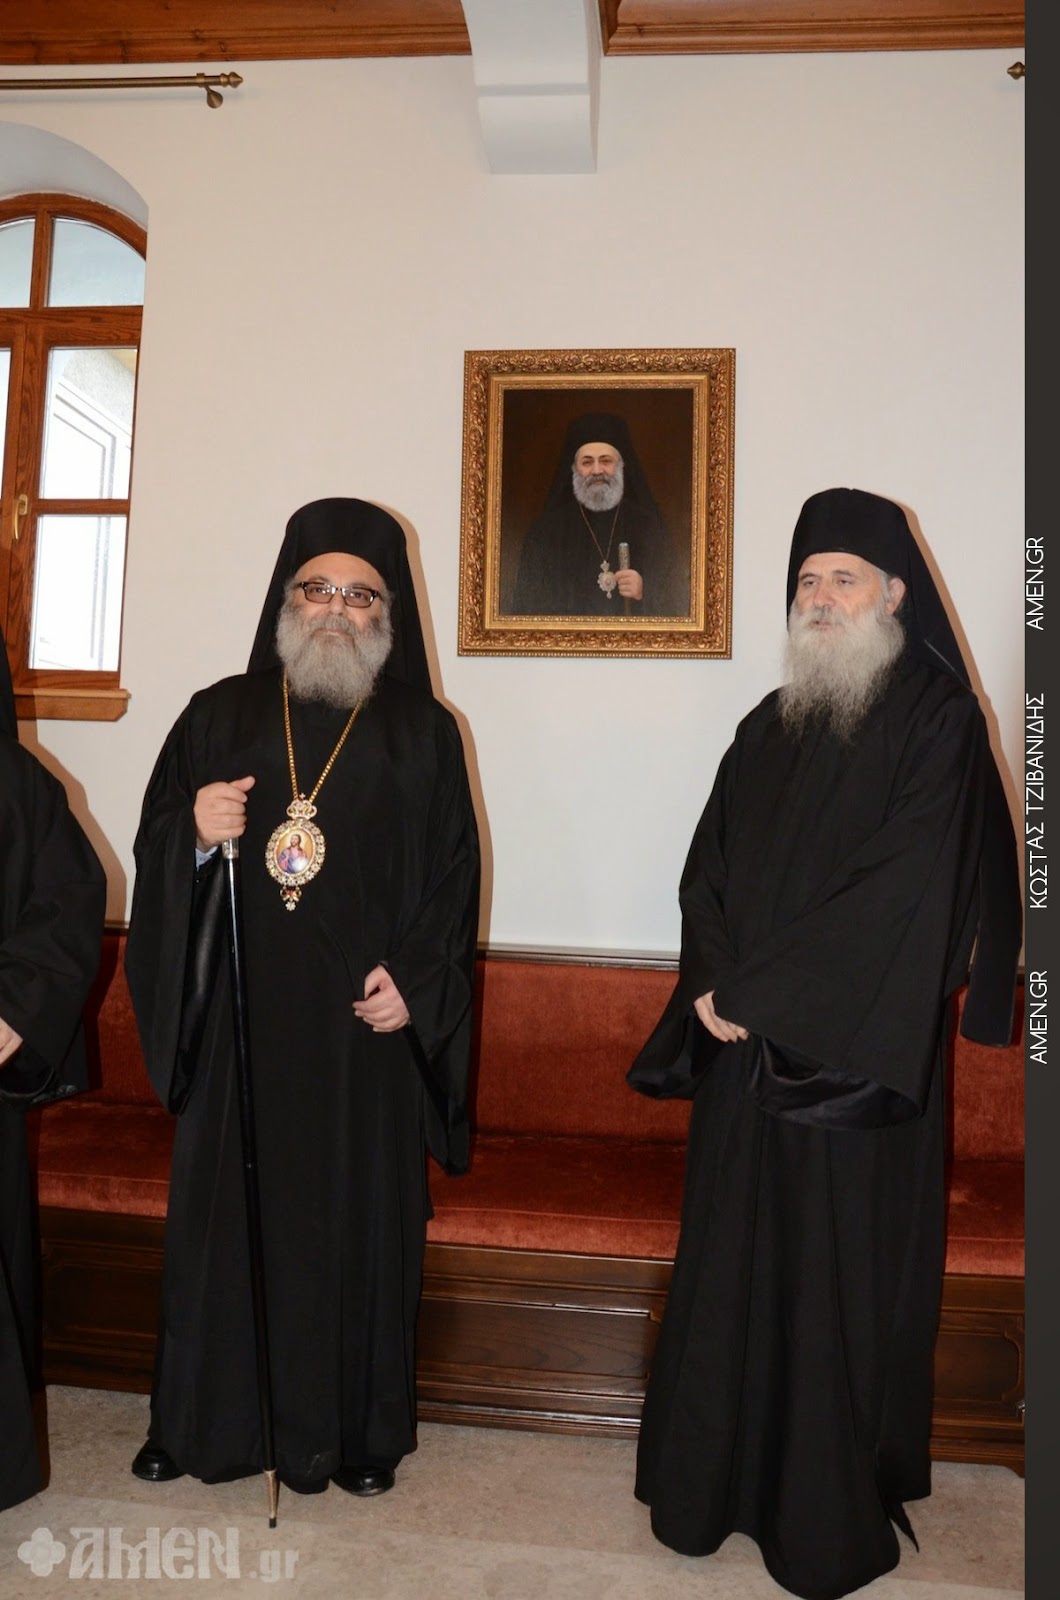 5502 - Η πιο συγκινητική στιγμή του Πατριάρχη Αντιοχείας στο Άγιον Όρος (φωτογραφίες) - Φωτογραφία 2